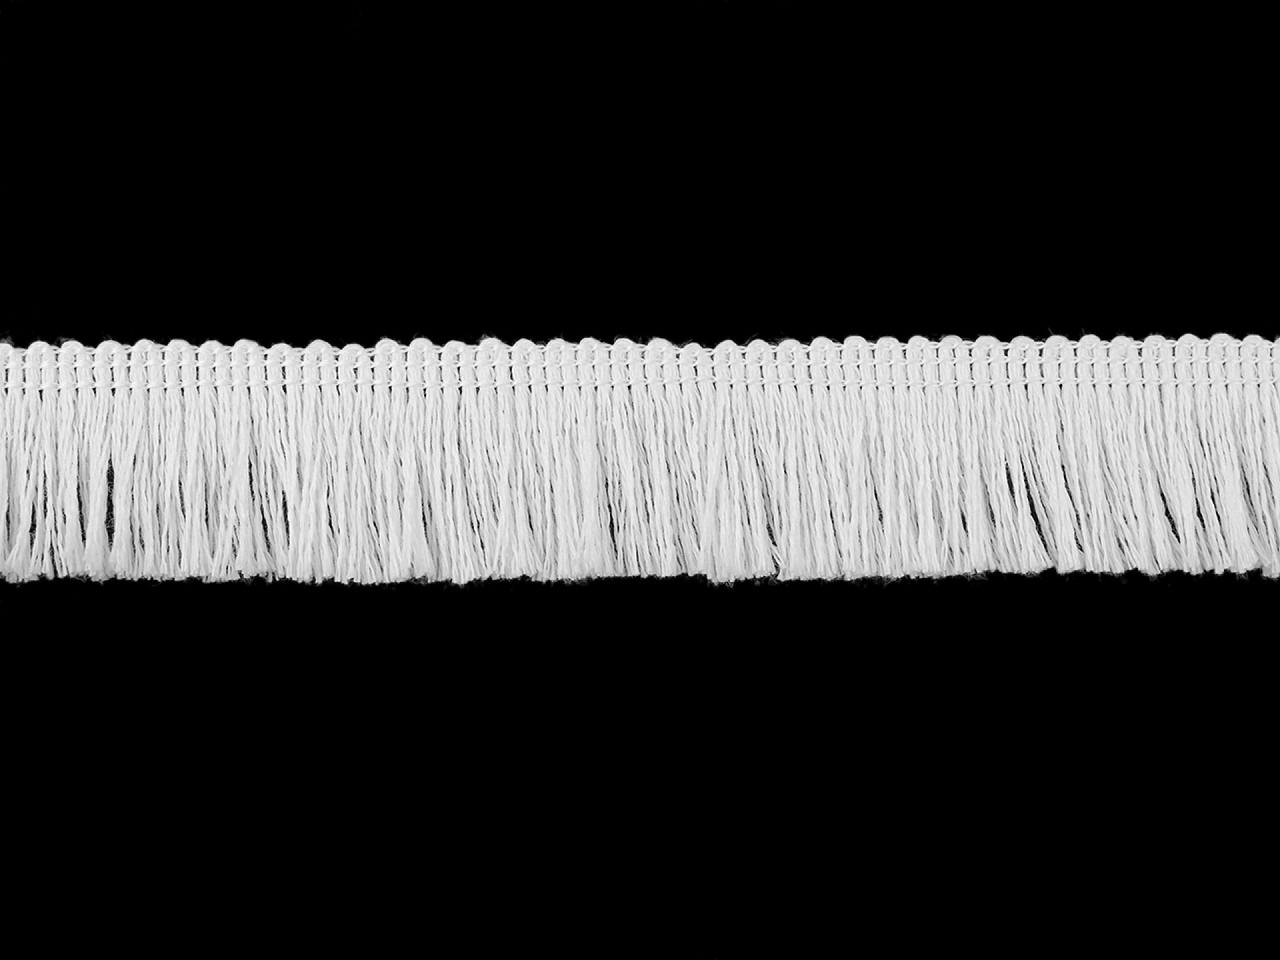 Textillux.sk - produkt Bavlnené strapce šírka 25 mm